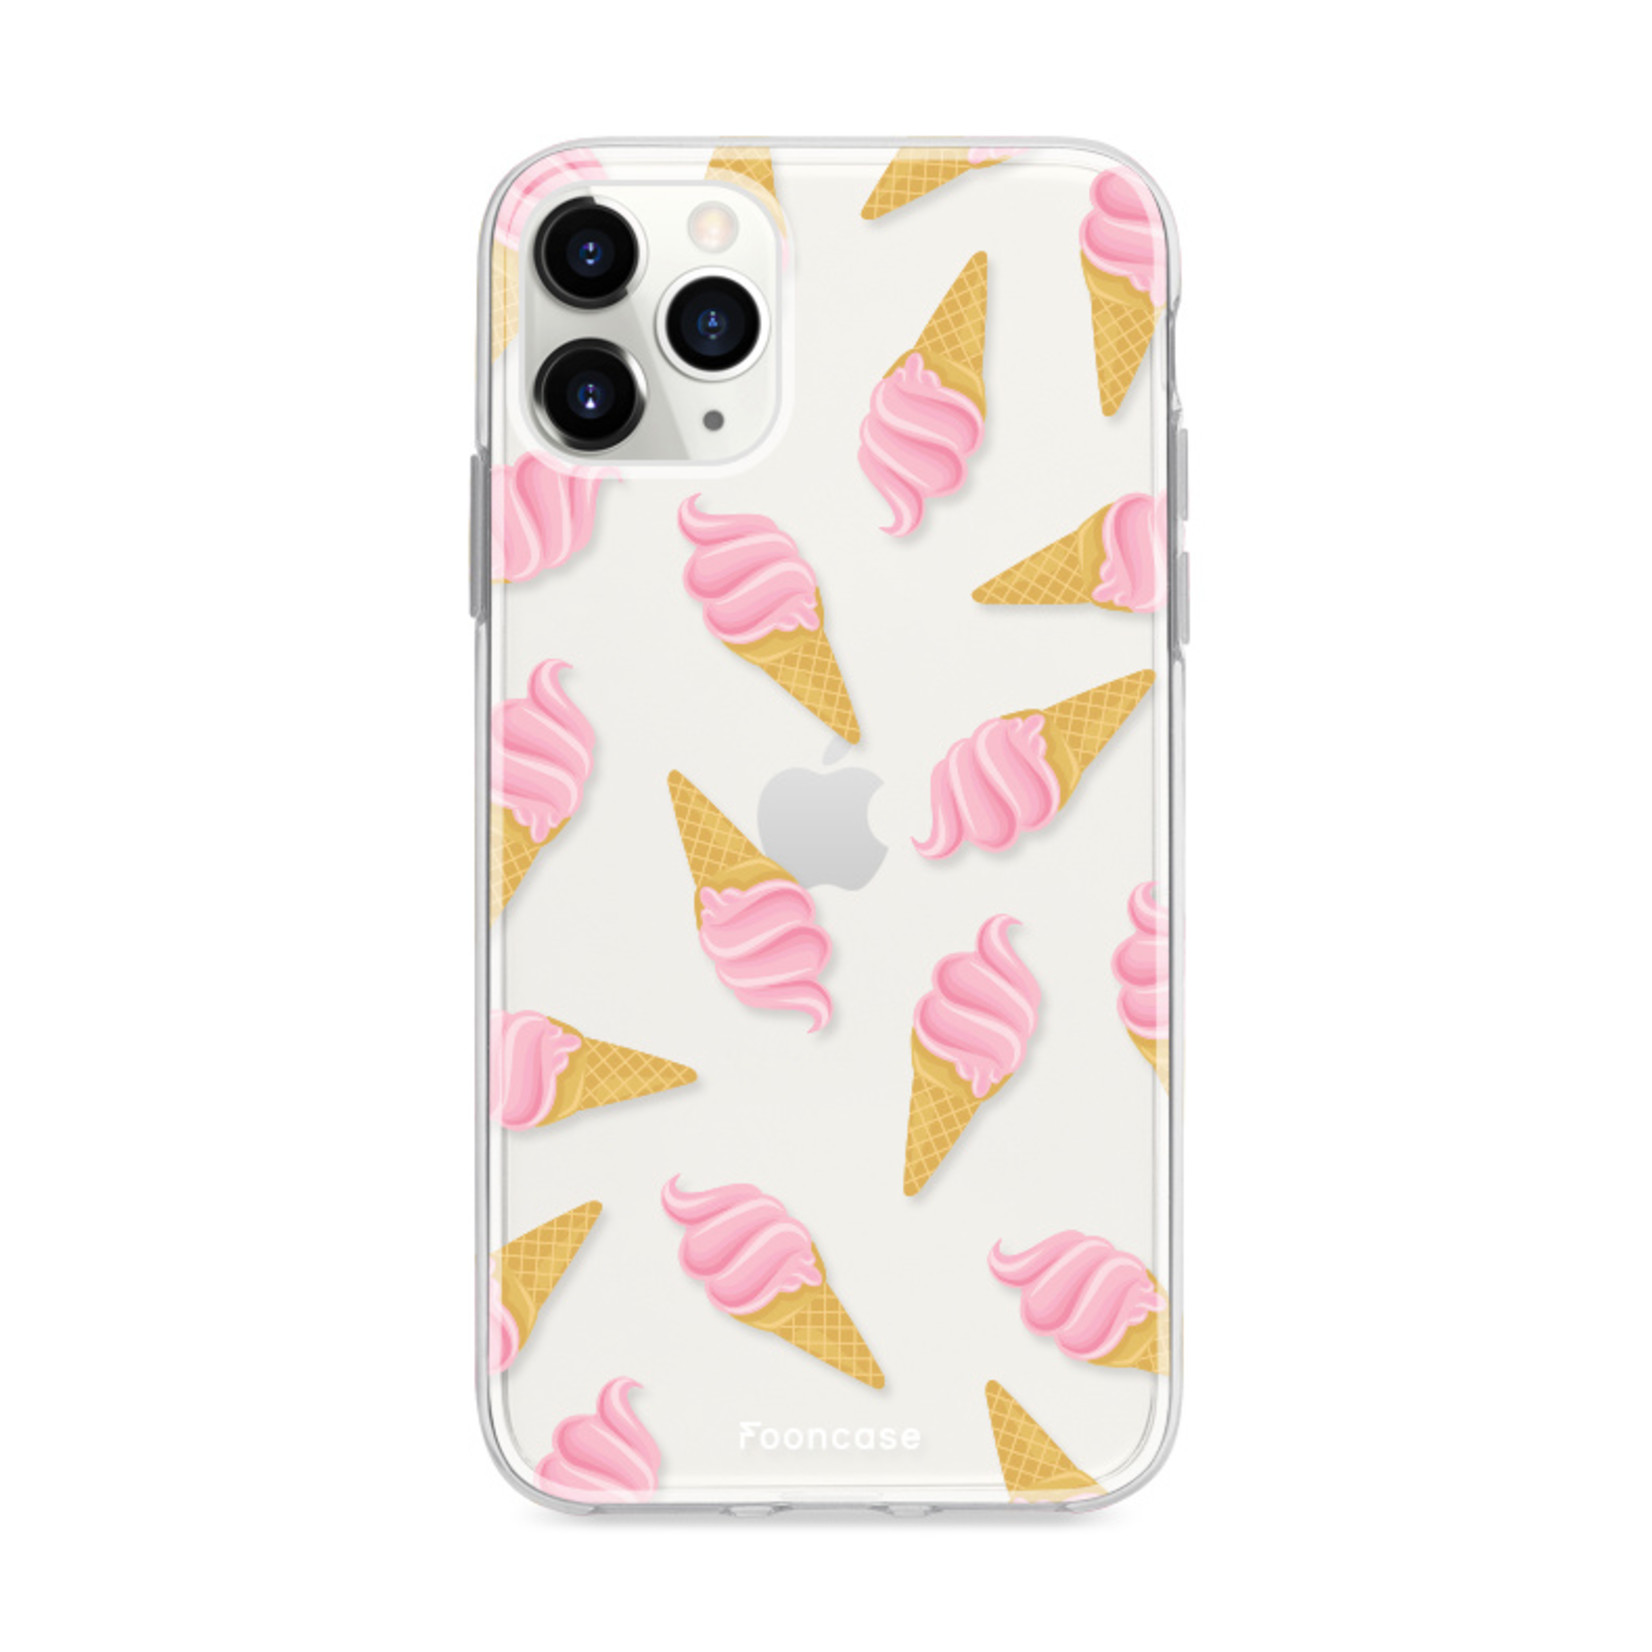 FOONCASE iPhone 12 Pro Max hoesje TPU Soft Case - Back Cover - Ice Ice Baby / Ijsjes / Roze ijsjes